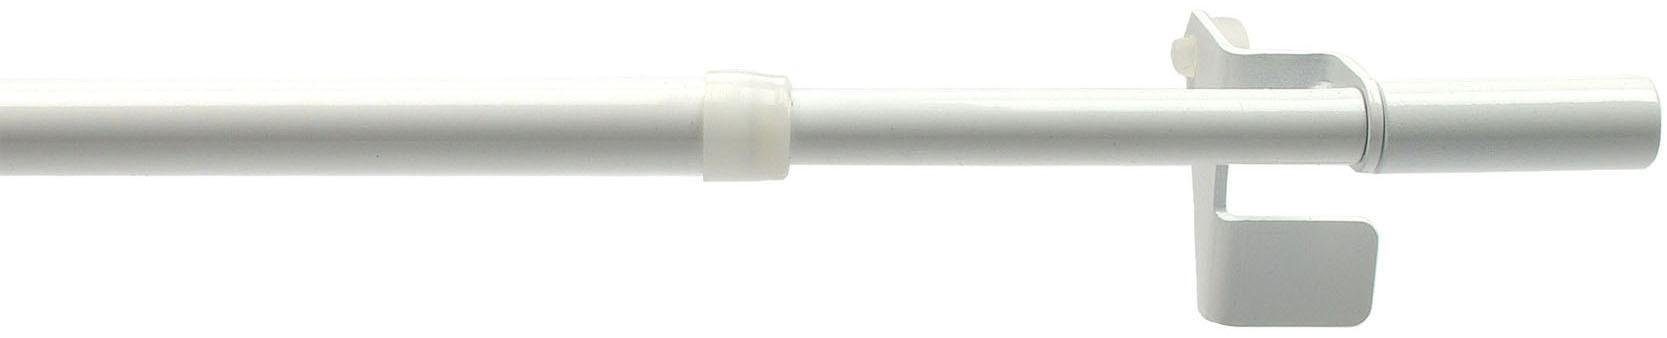 Scheibenstange Press-Fix, Liedeco, Ø 12 mm, 1-läufig, ausziehbar, ohne Bohren, geklemmt, Edelstahl, Kunststoff weiß